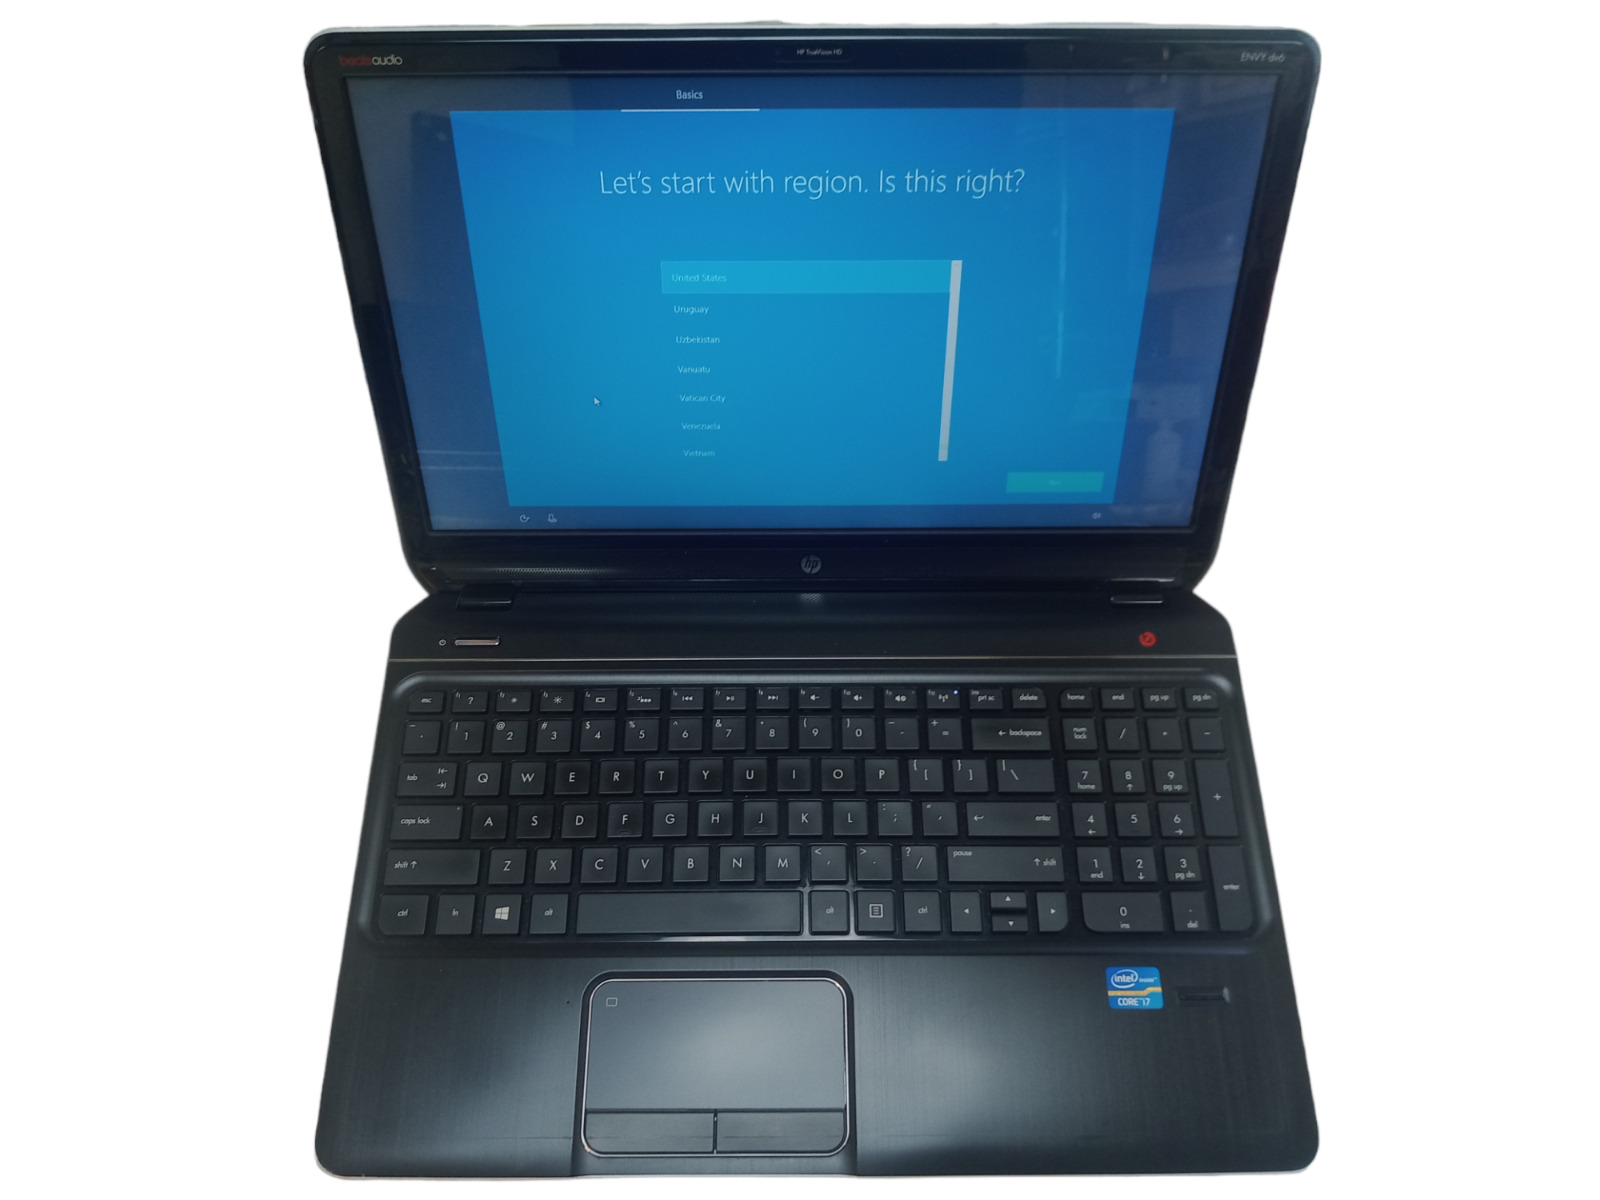 HP Envy DV6-7363CL i7-3630QM 2.4GHz 1TB SSD 16GB RAM Windows 10 Laptop Good